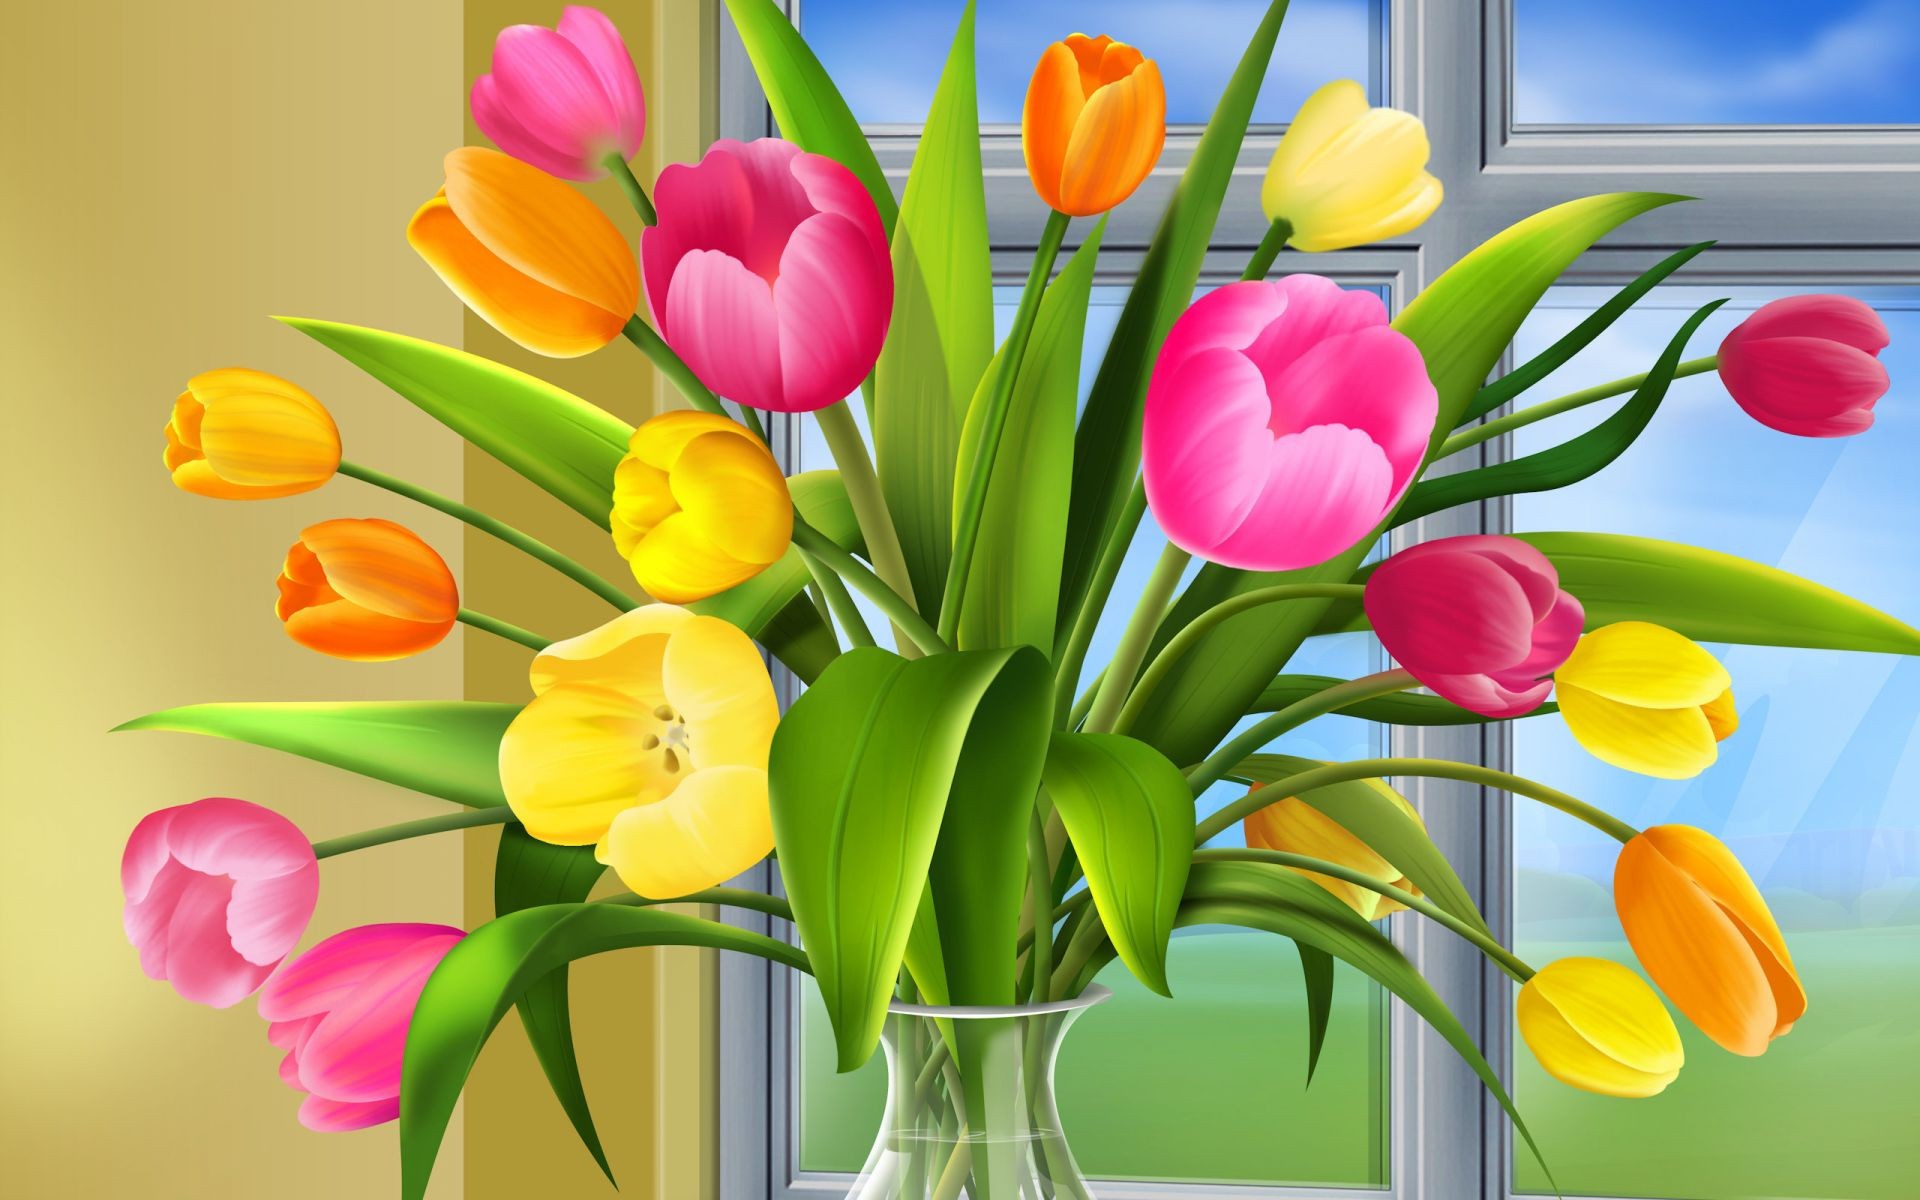 в вазе или горшке природа пасха лист цветок флора тюльпан букет сад ваза украшения цветочные лето цвет яркий изолированные сезон подарок лузга красивые